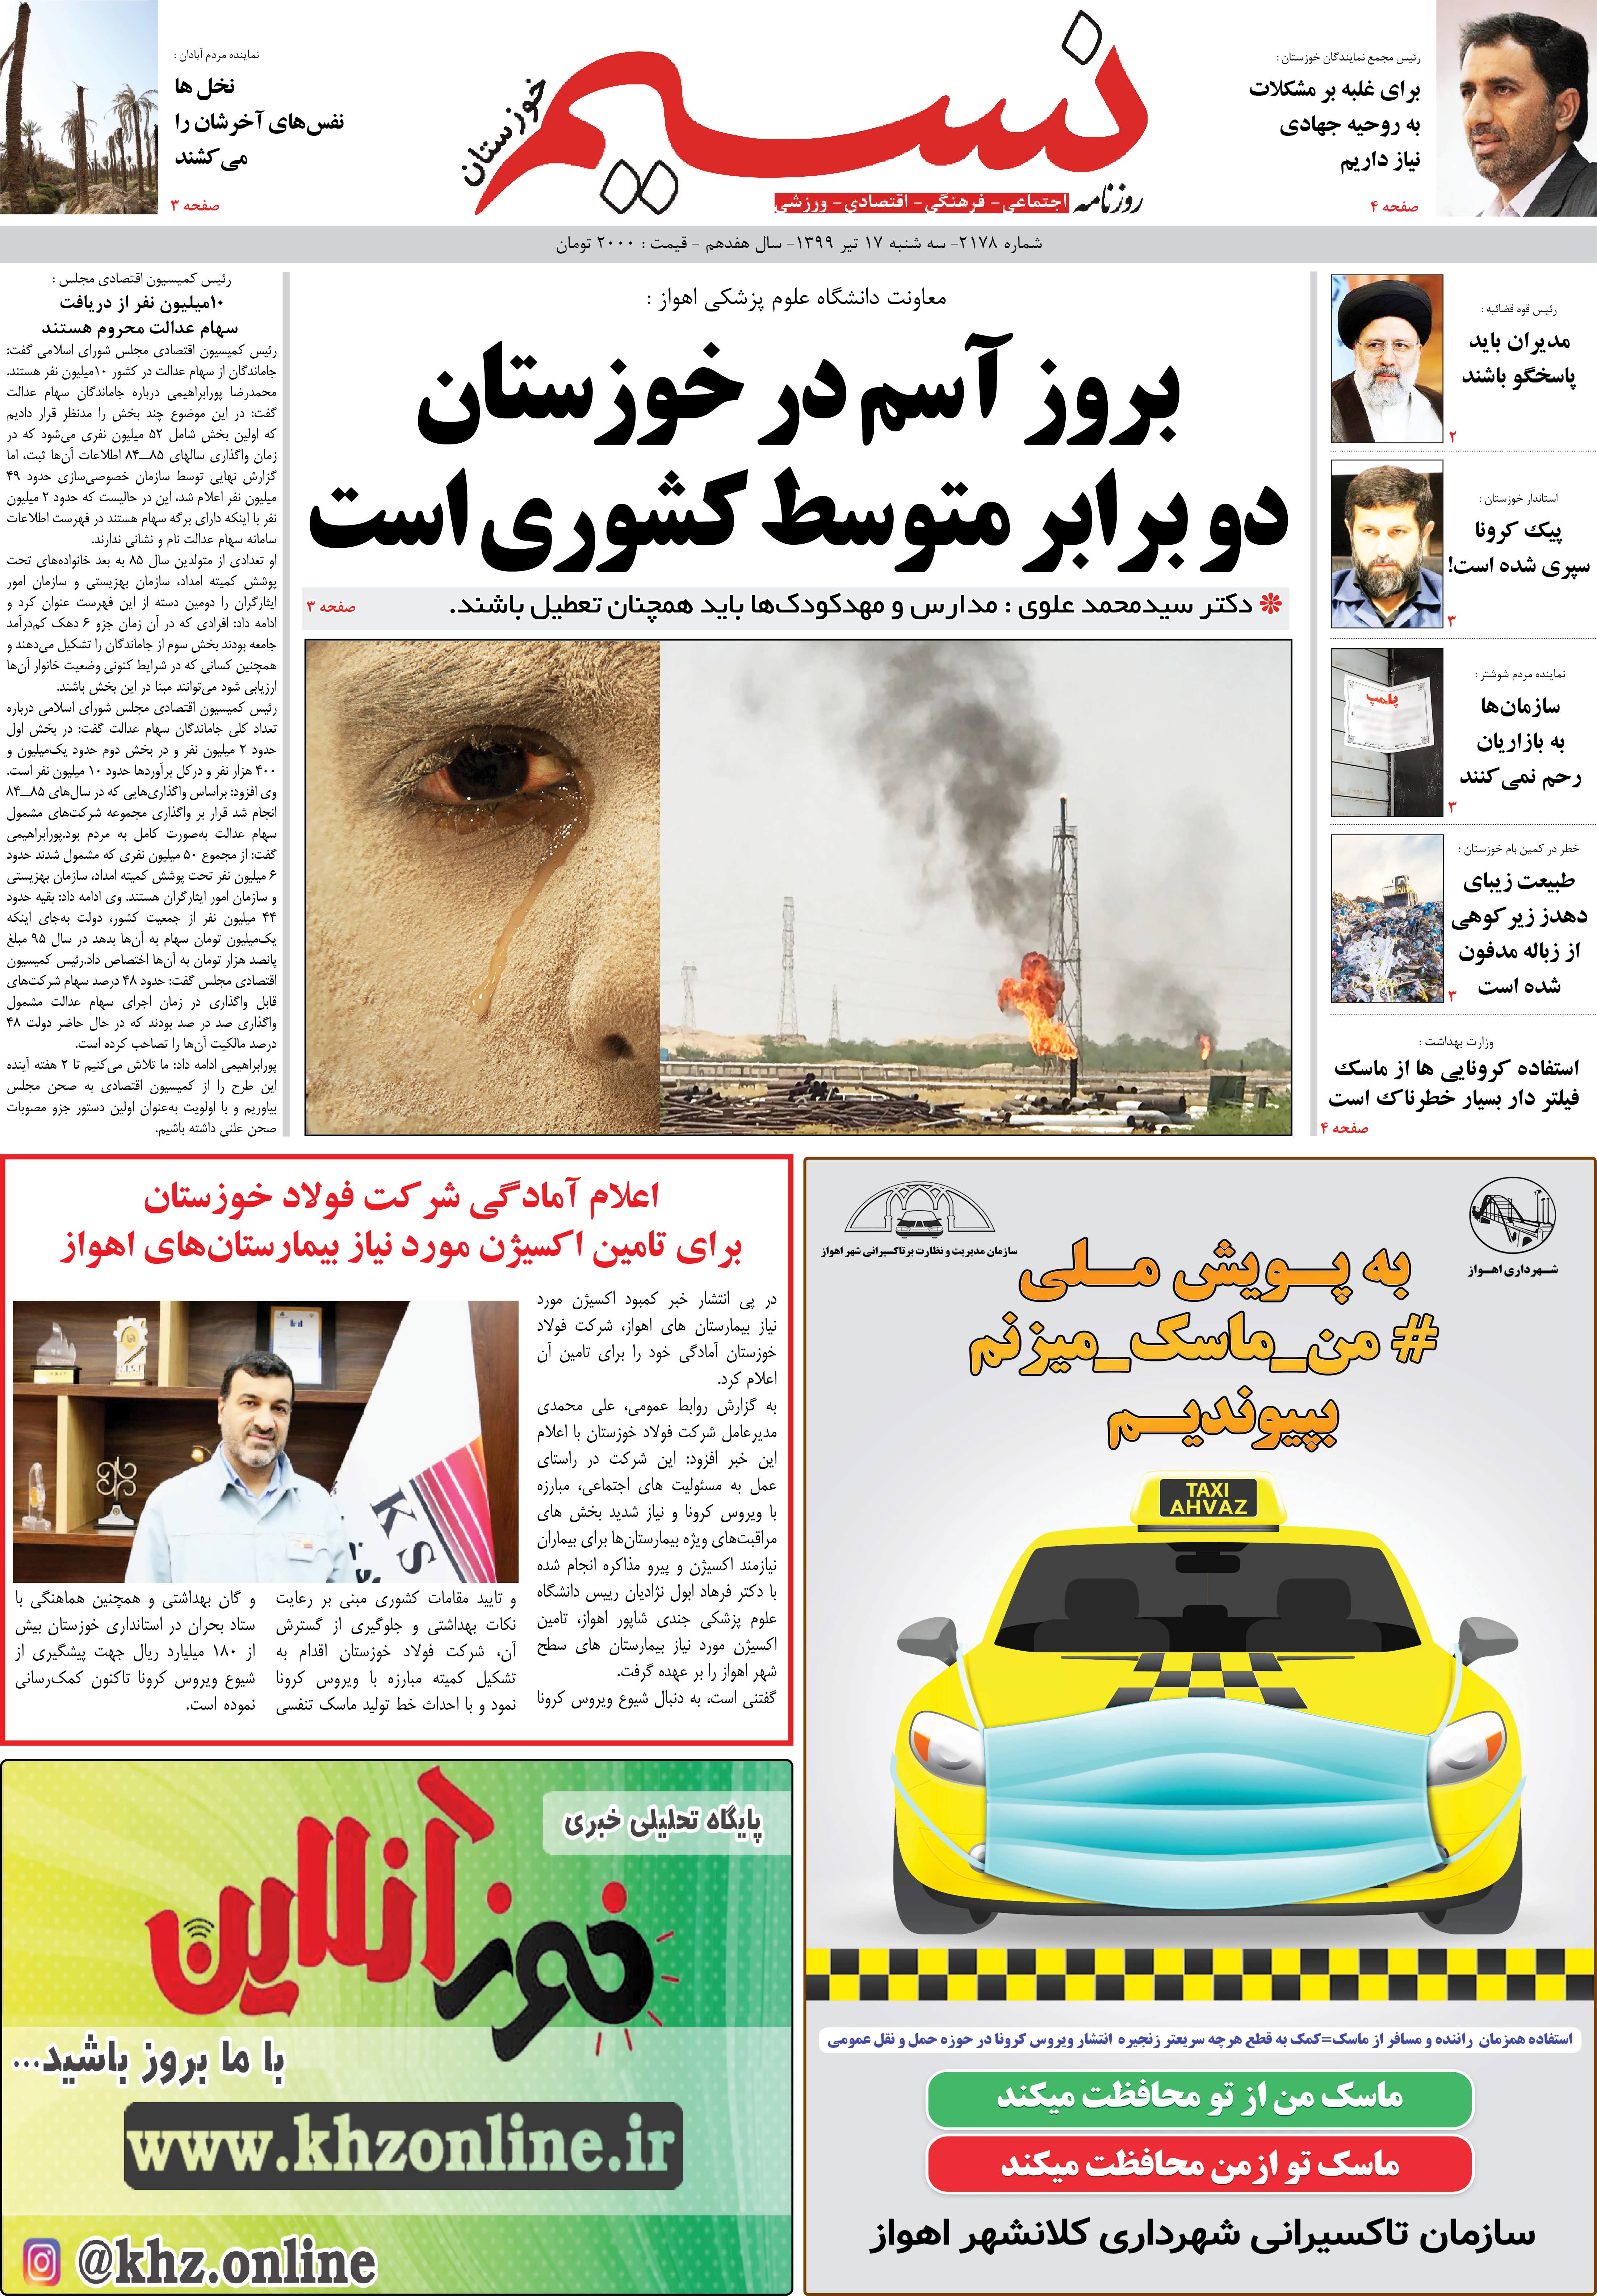 صفحه اصلی روزنامه نسیم شماره 2178 